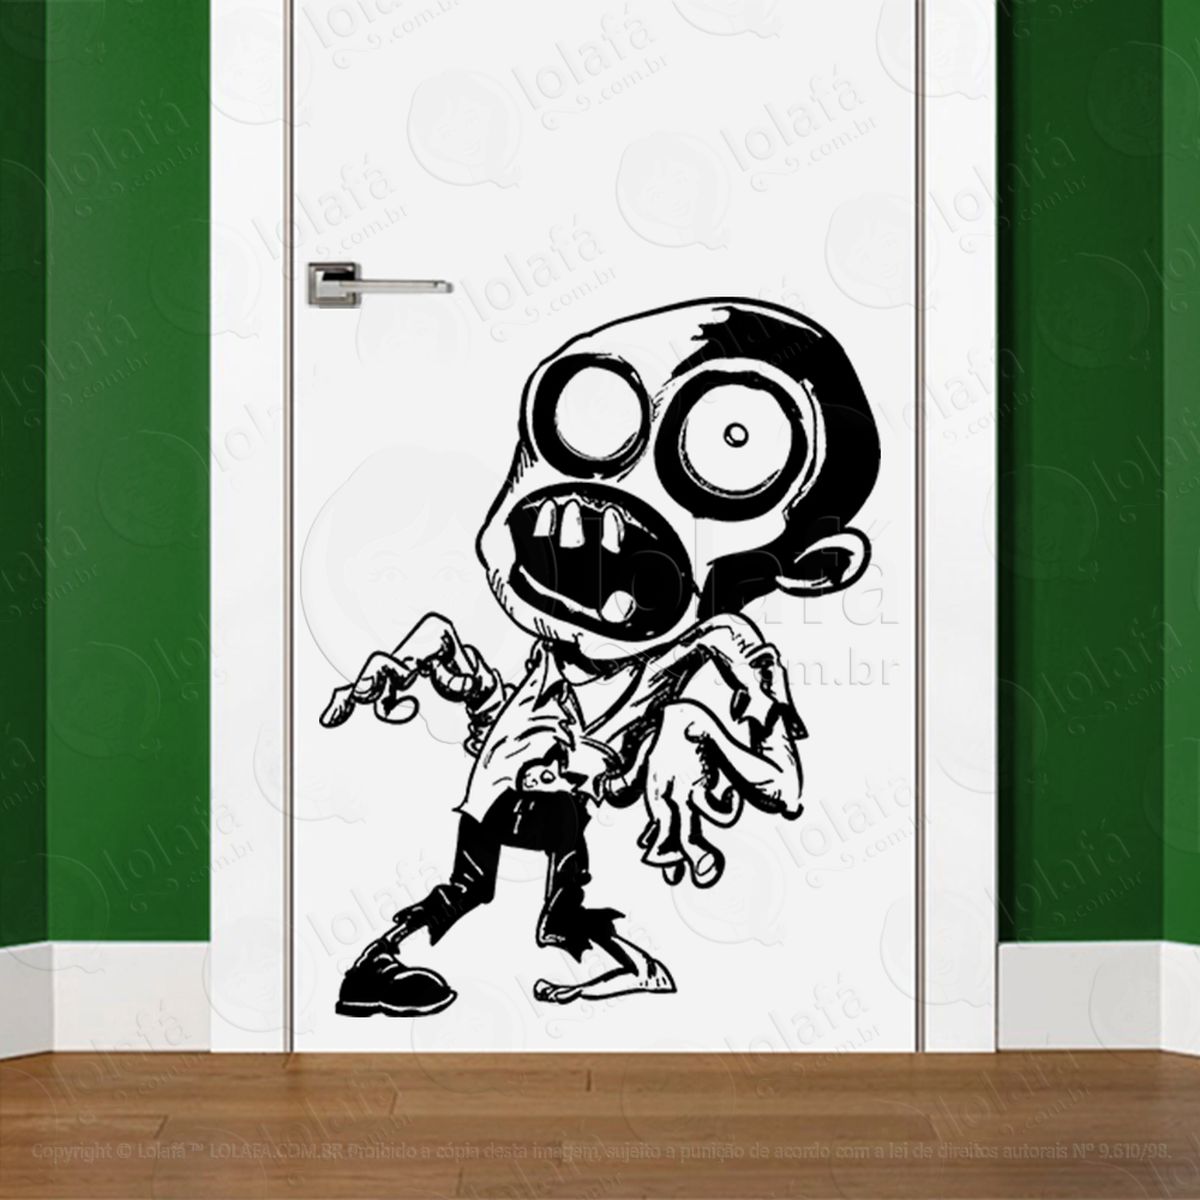 zombie adesivo de parede para quarto, porta e vidro - mod:79